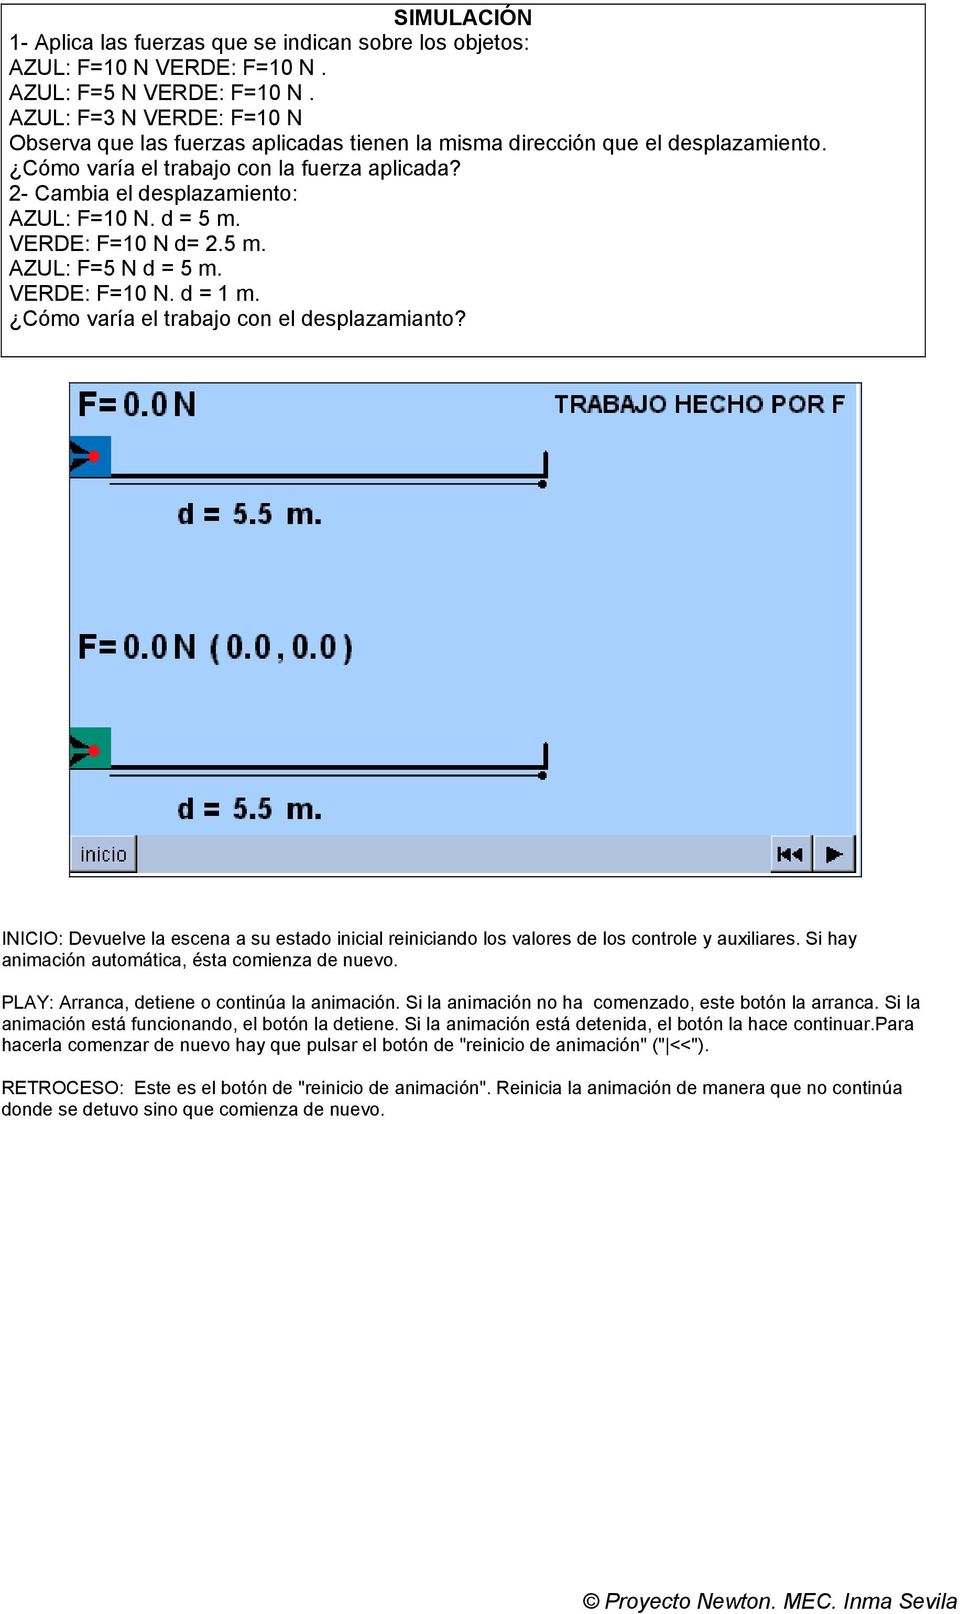 2- Cambia el desplazamiento: AZUL: F=10 N. d = 5 m. VERDE: F=10 N d= 2.5 m. AZUL: F=5 N d = 5 m. VERDE: F=10 N. d = 1 m. Cómo varía el trabajo con el desplazamianto?